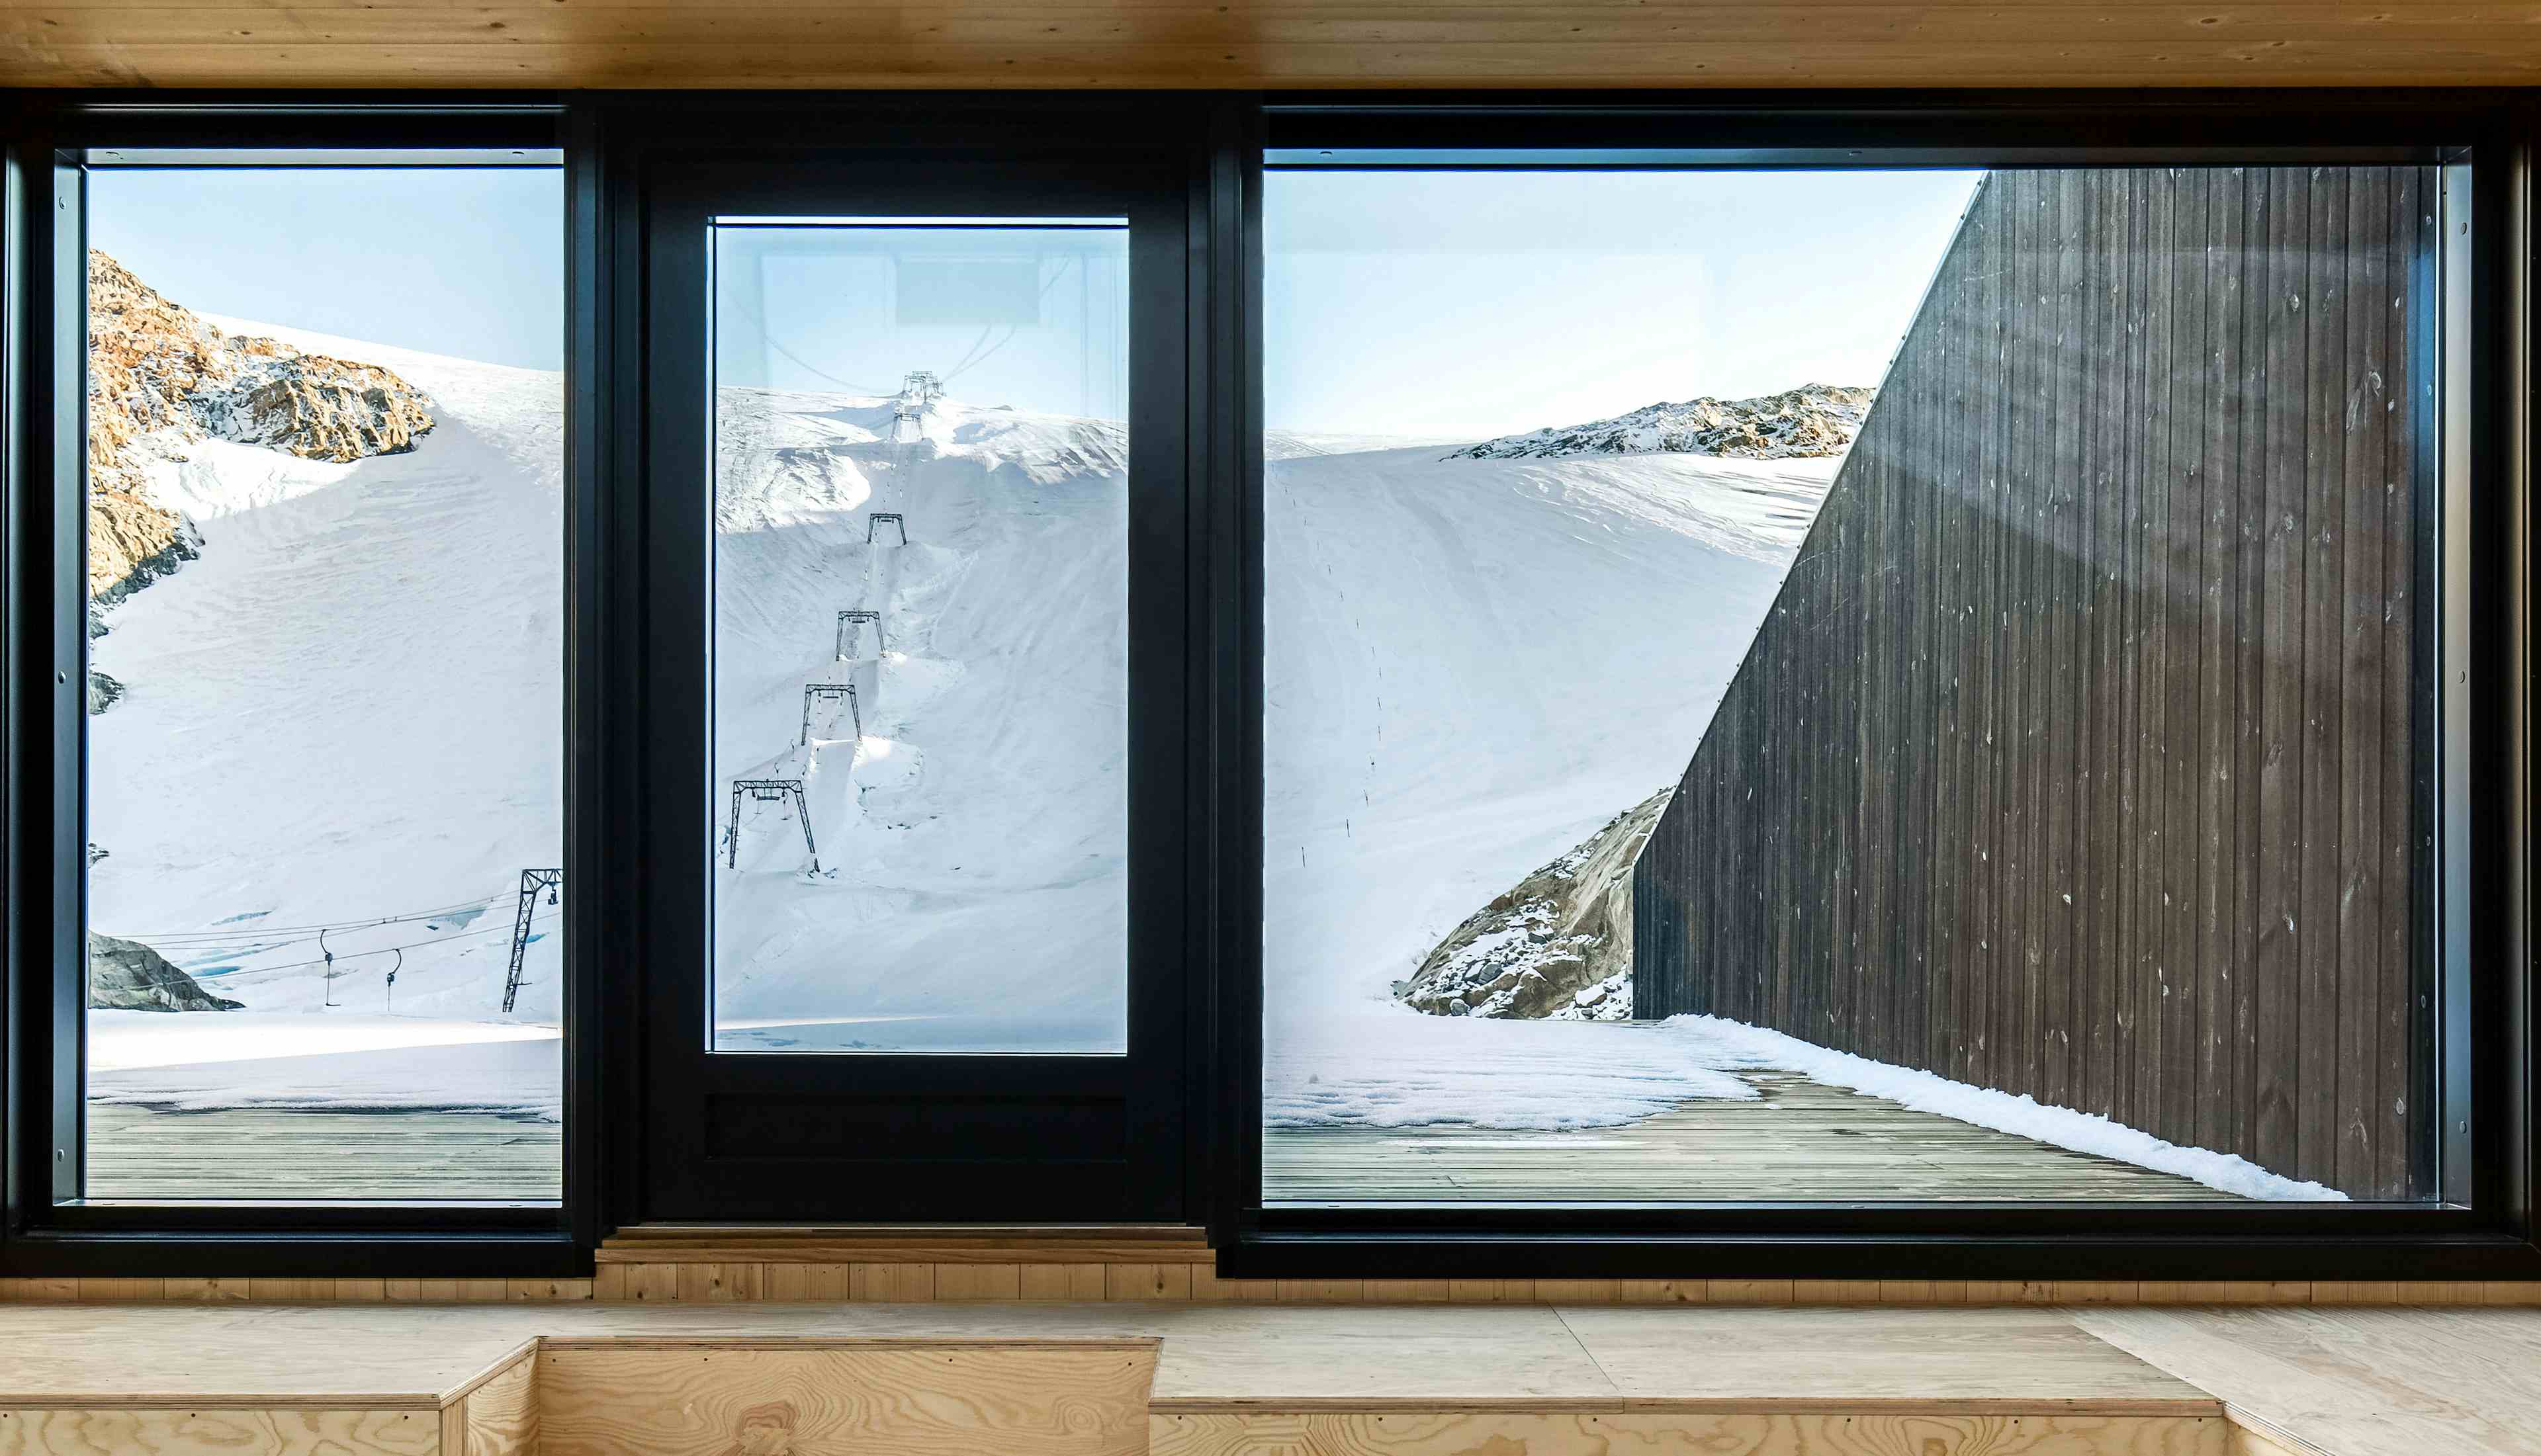 Fonna119 - det nye velkomstsenteret på isbreen Folgefonna i Hardanger